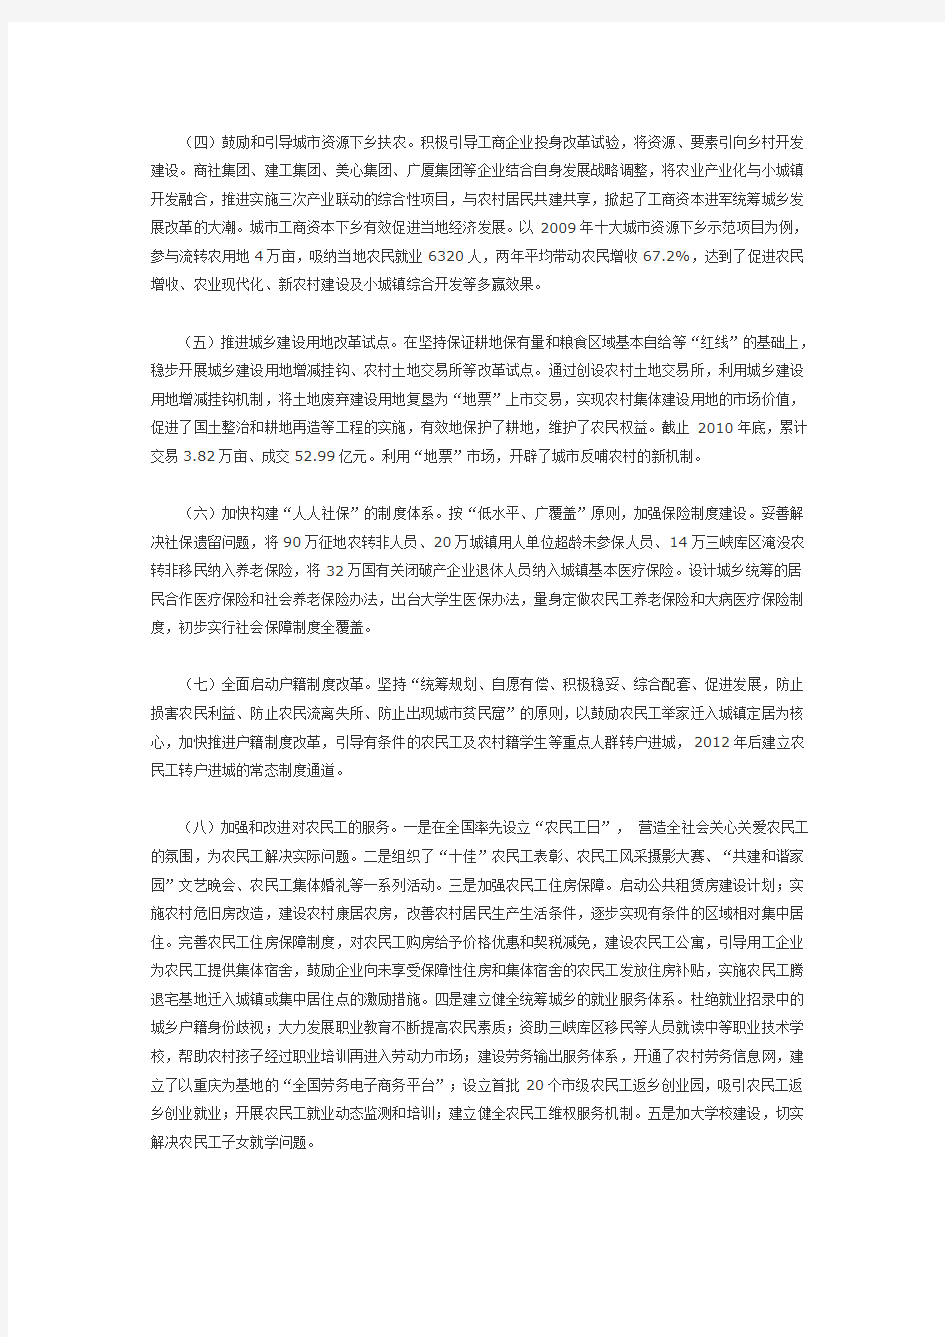 重庆市推进统筹城乡综合配套改革试验的做法与经验